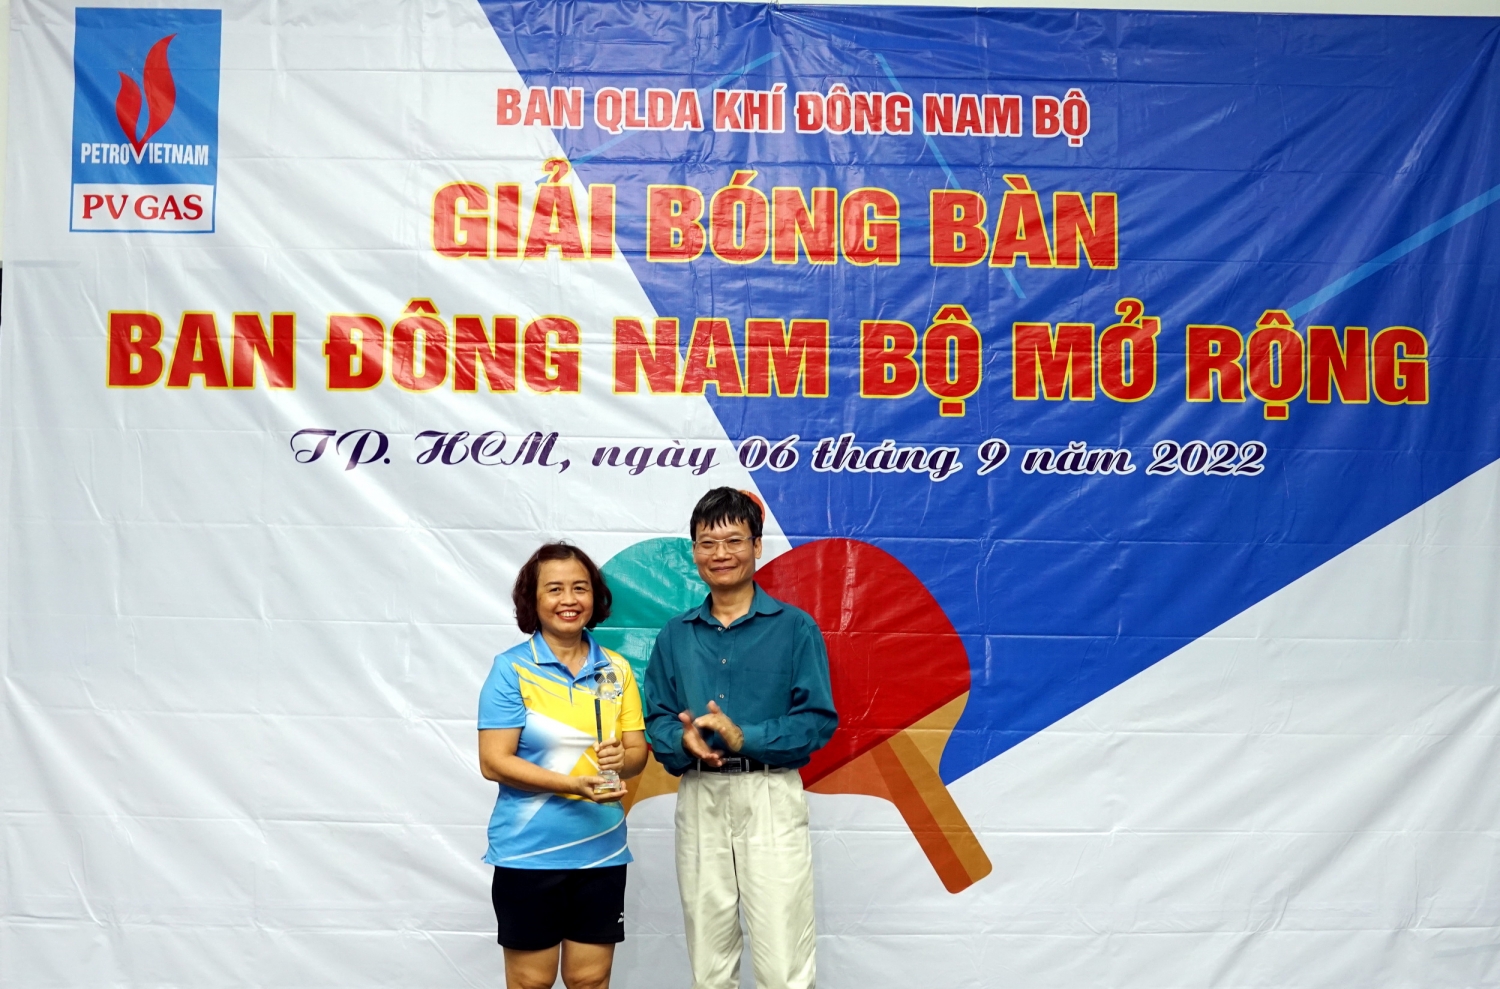 Cuộc “lên ngôi” Vô địch của nữ VĐV Nguyễn Kim Nhung là bất ngờ thú vị của Giải